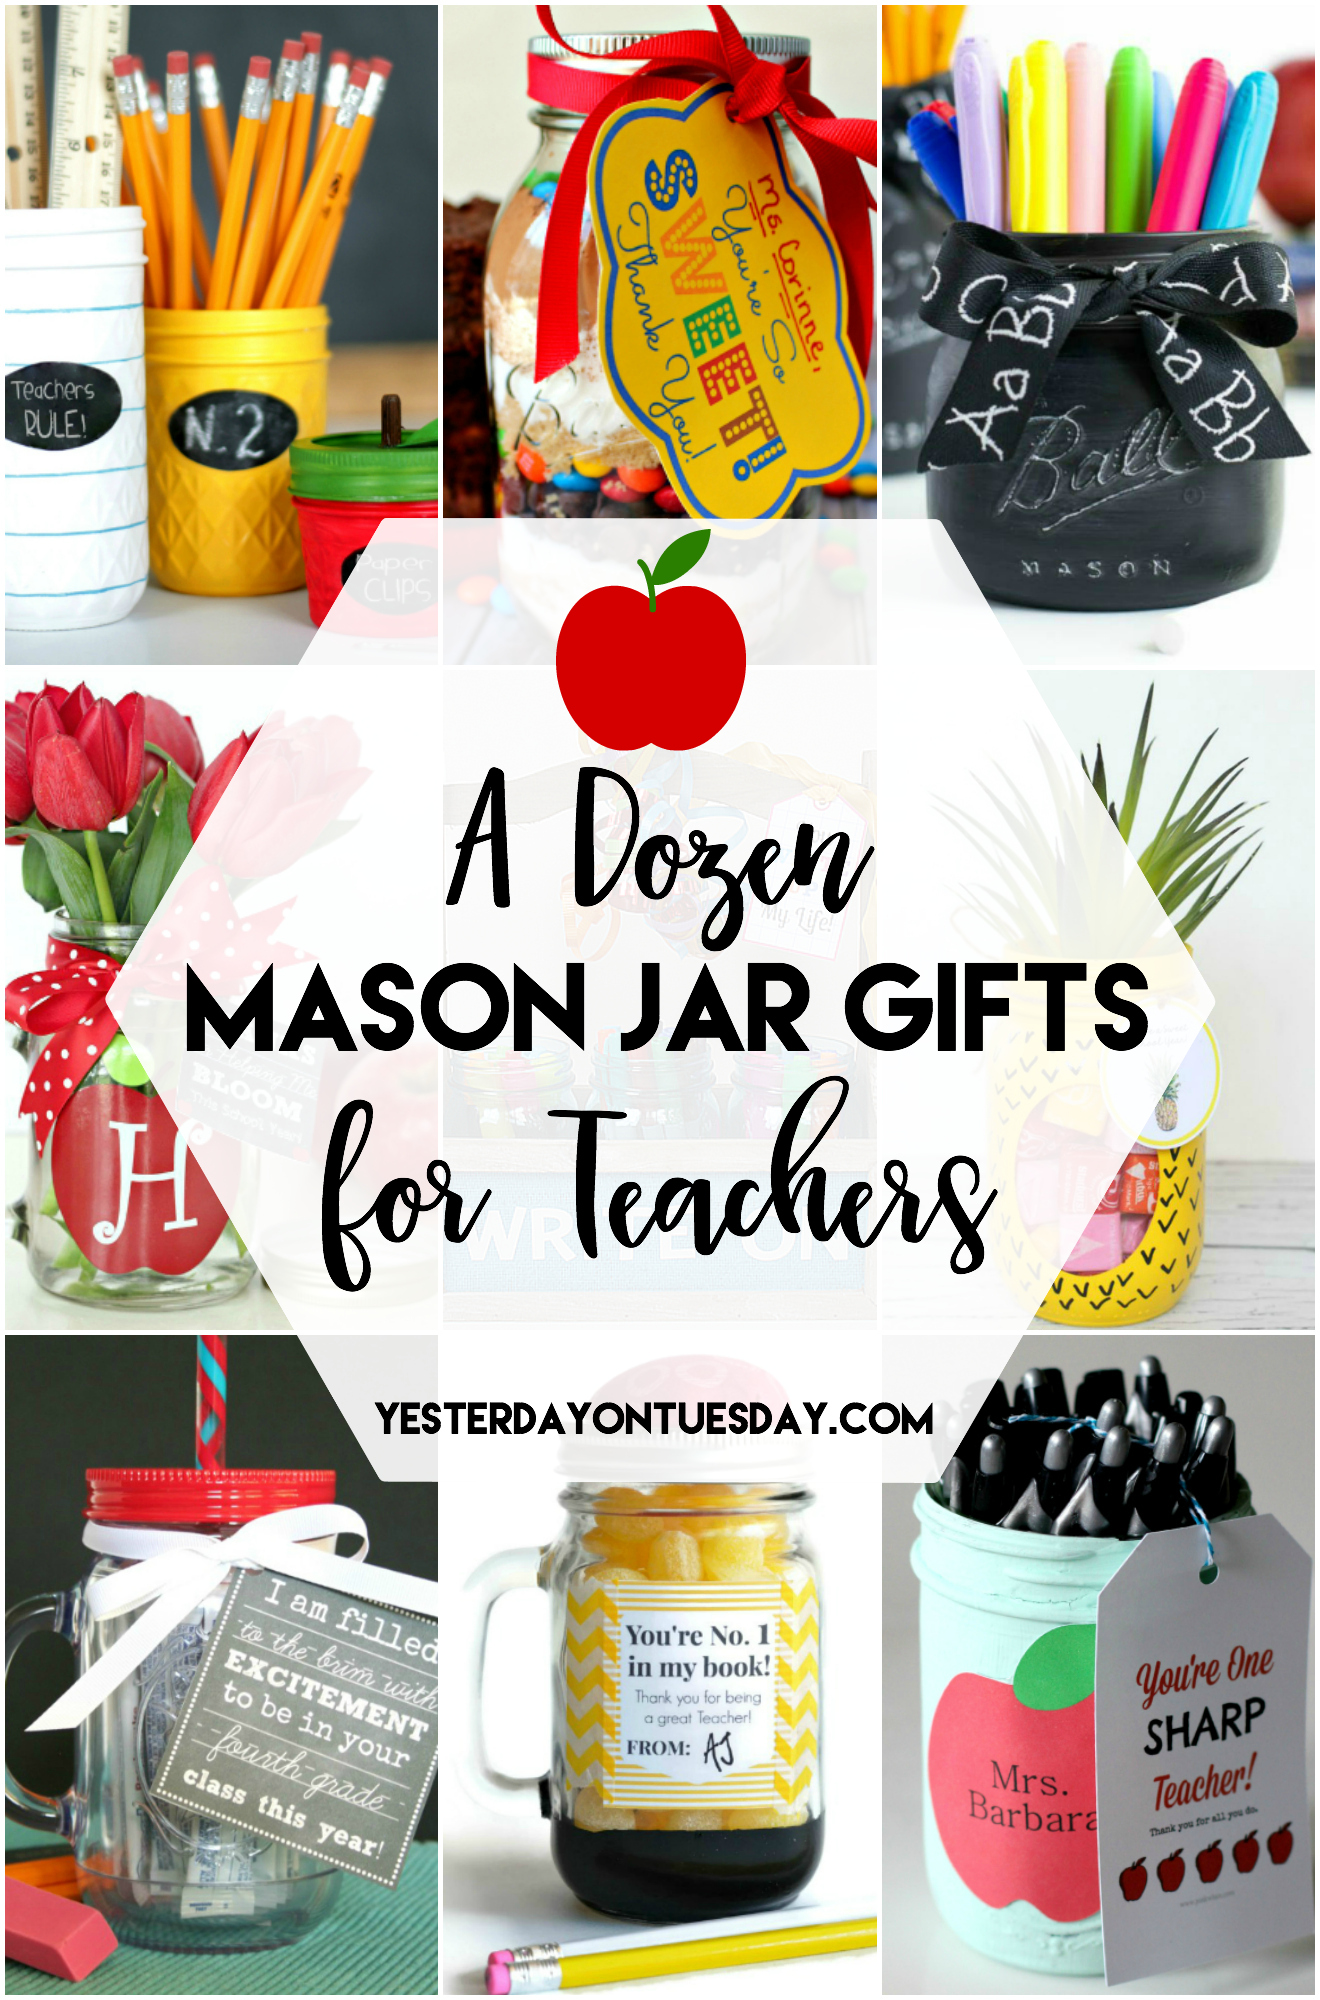 A Dozen Mason Jar Gifts for Teachers